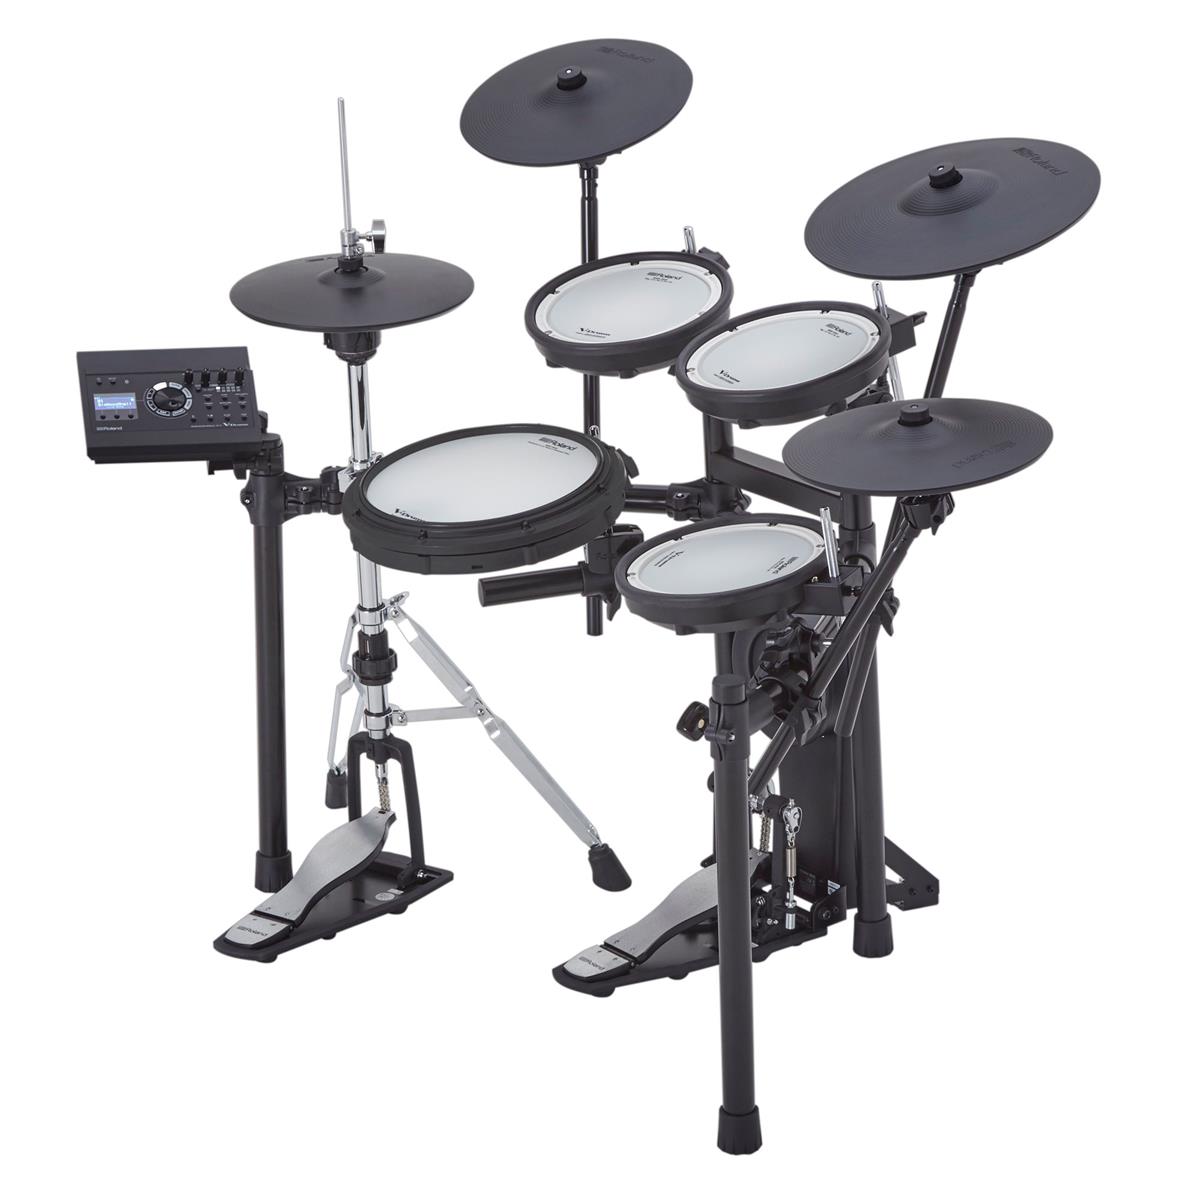 Image of Roland TD-17KVX Generation 2 V-Drums Electronic Drum Kit